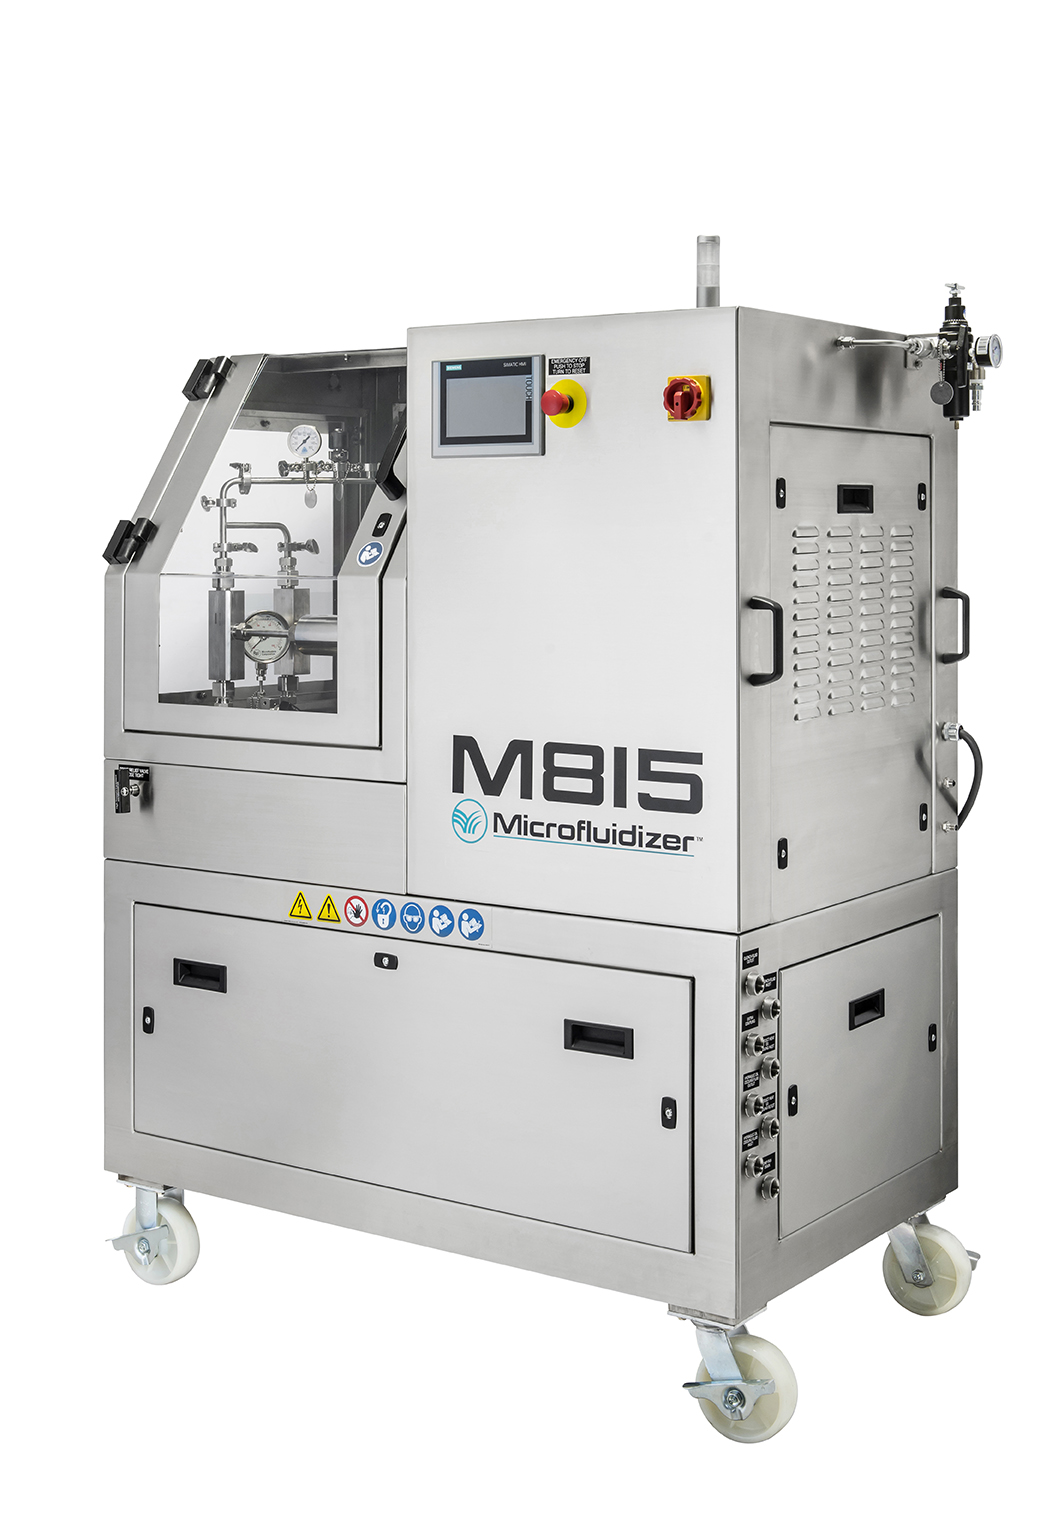 M815 Microfluidizer® Pilot-Scale Biopharma Processor Series